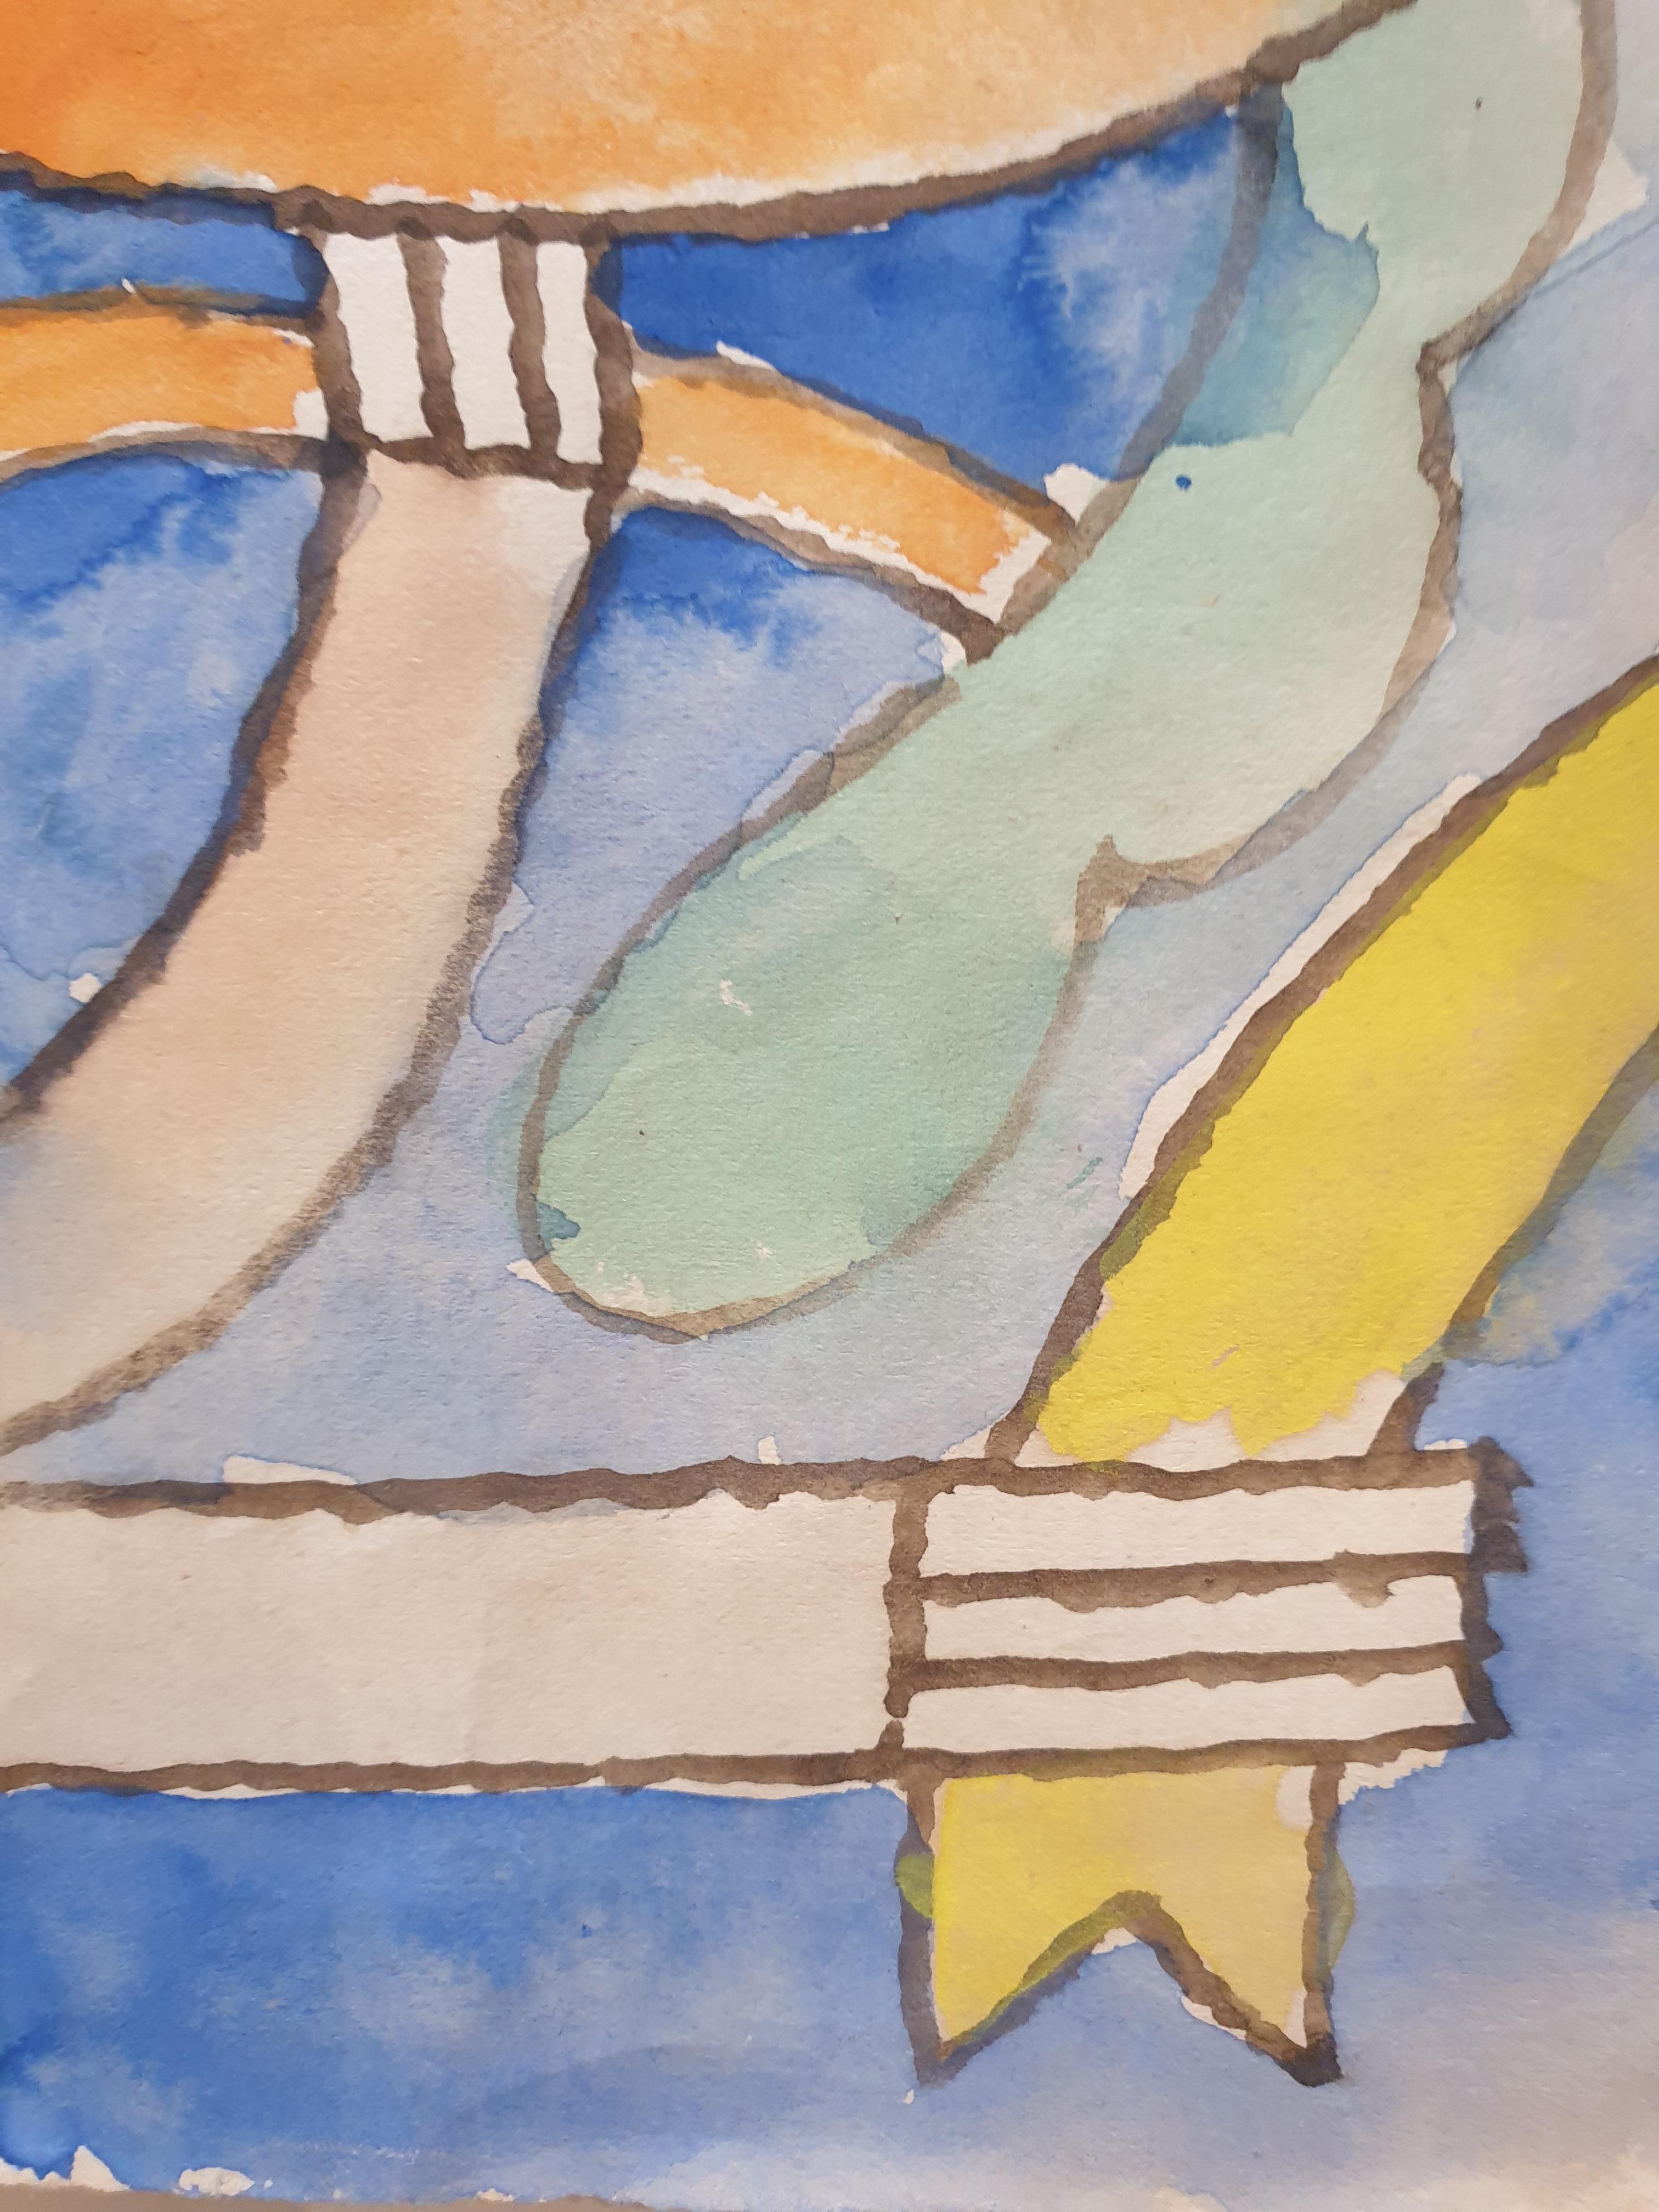 Aquarelle abstraite lyrique et surréaliste du milieu du siècle dernier sur papier de l'artiste français Jean Clerté, signée et datée en bas à droite. Présenté dans un cadre de style mid-century.

Jean Clerté , né en 1930 à Saint-Savin-sur-Gartempe